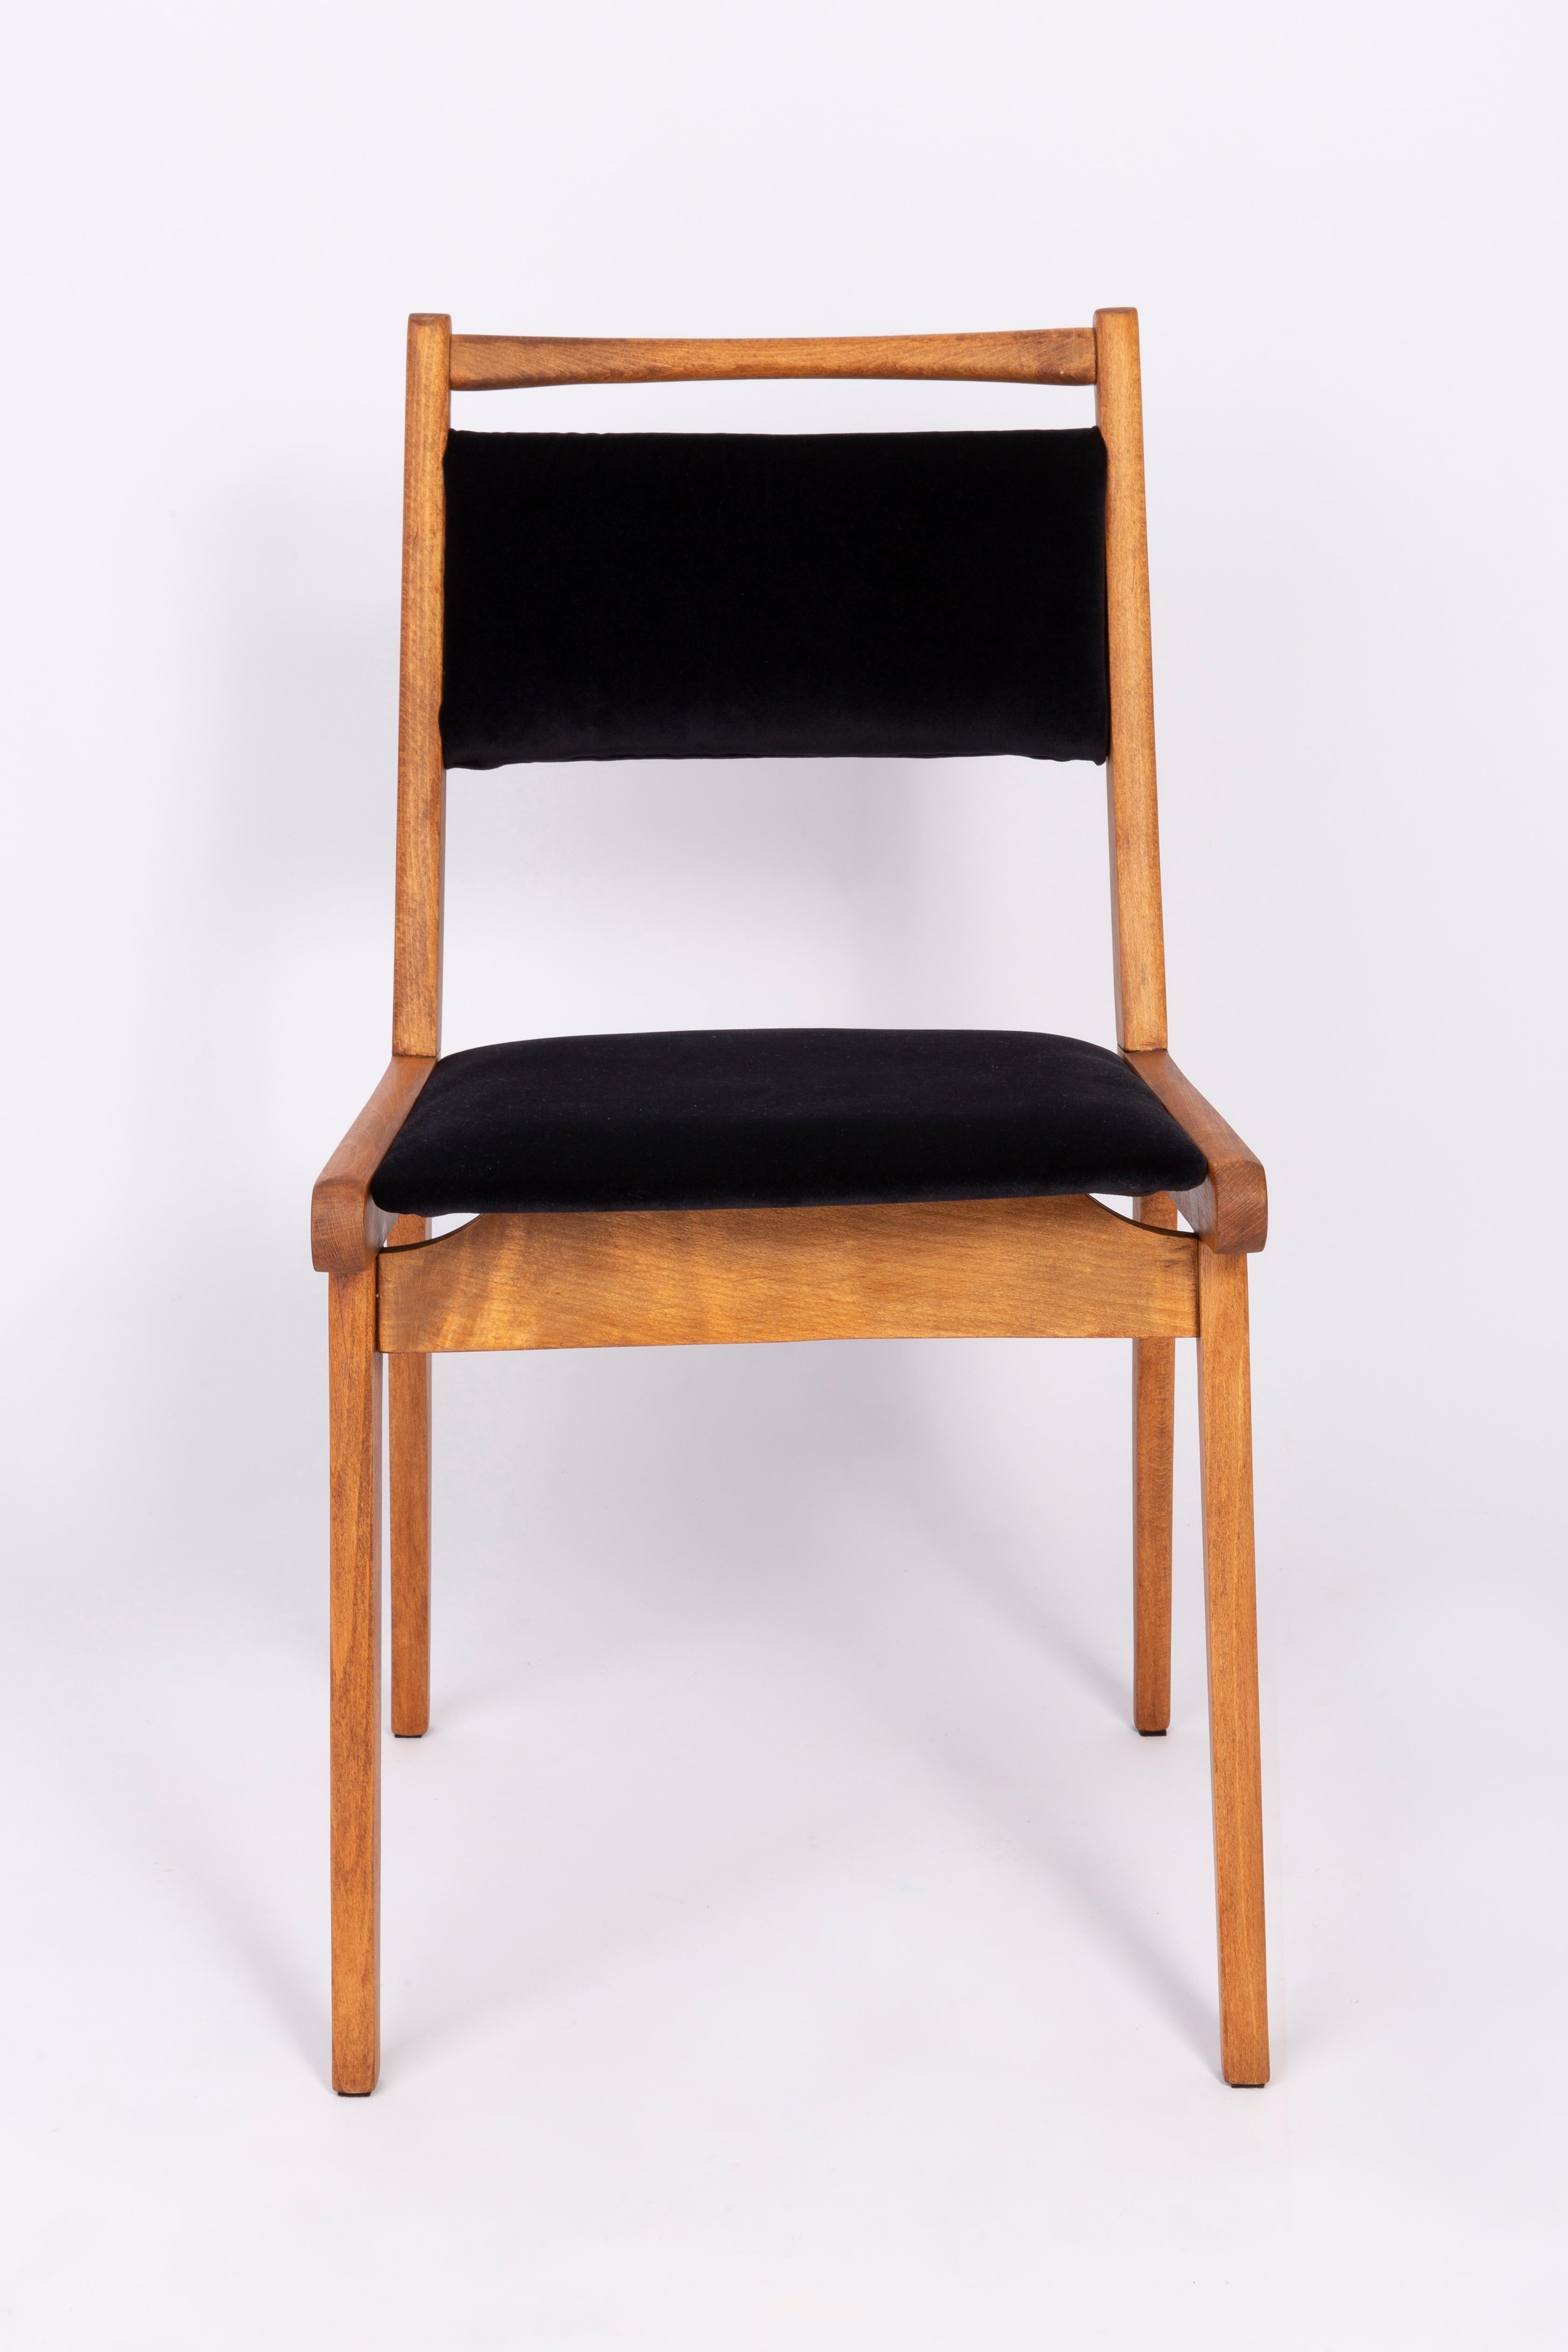 20th Century Black Velvet Chair, Poland, 1960s For Sale 2